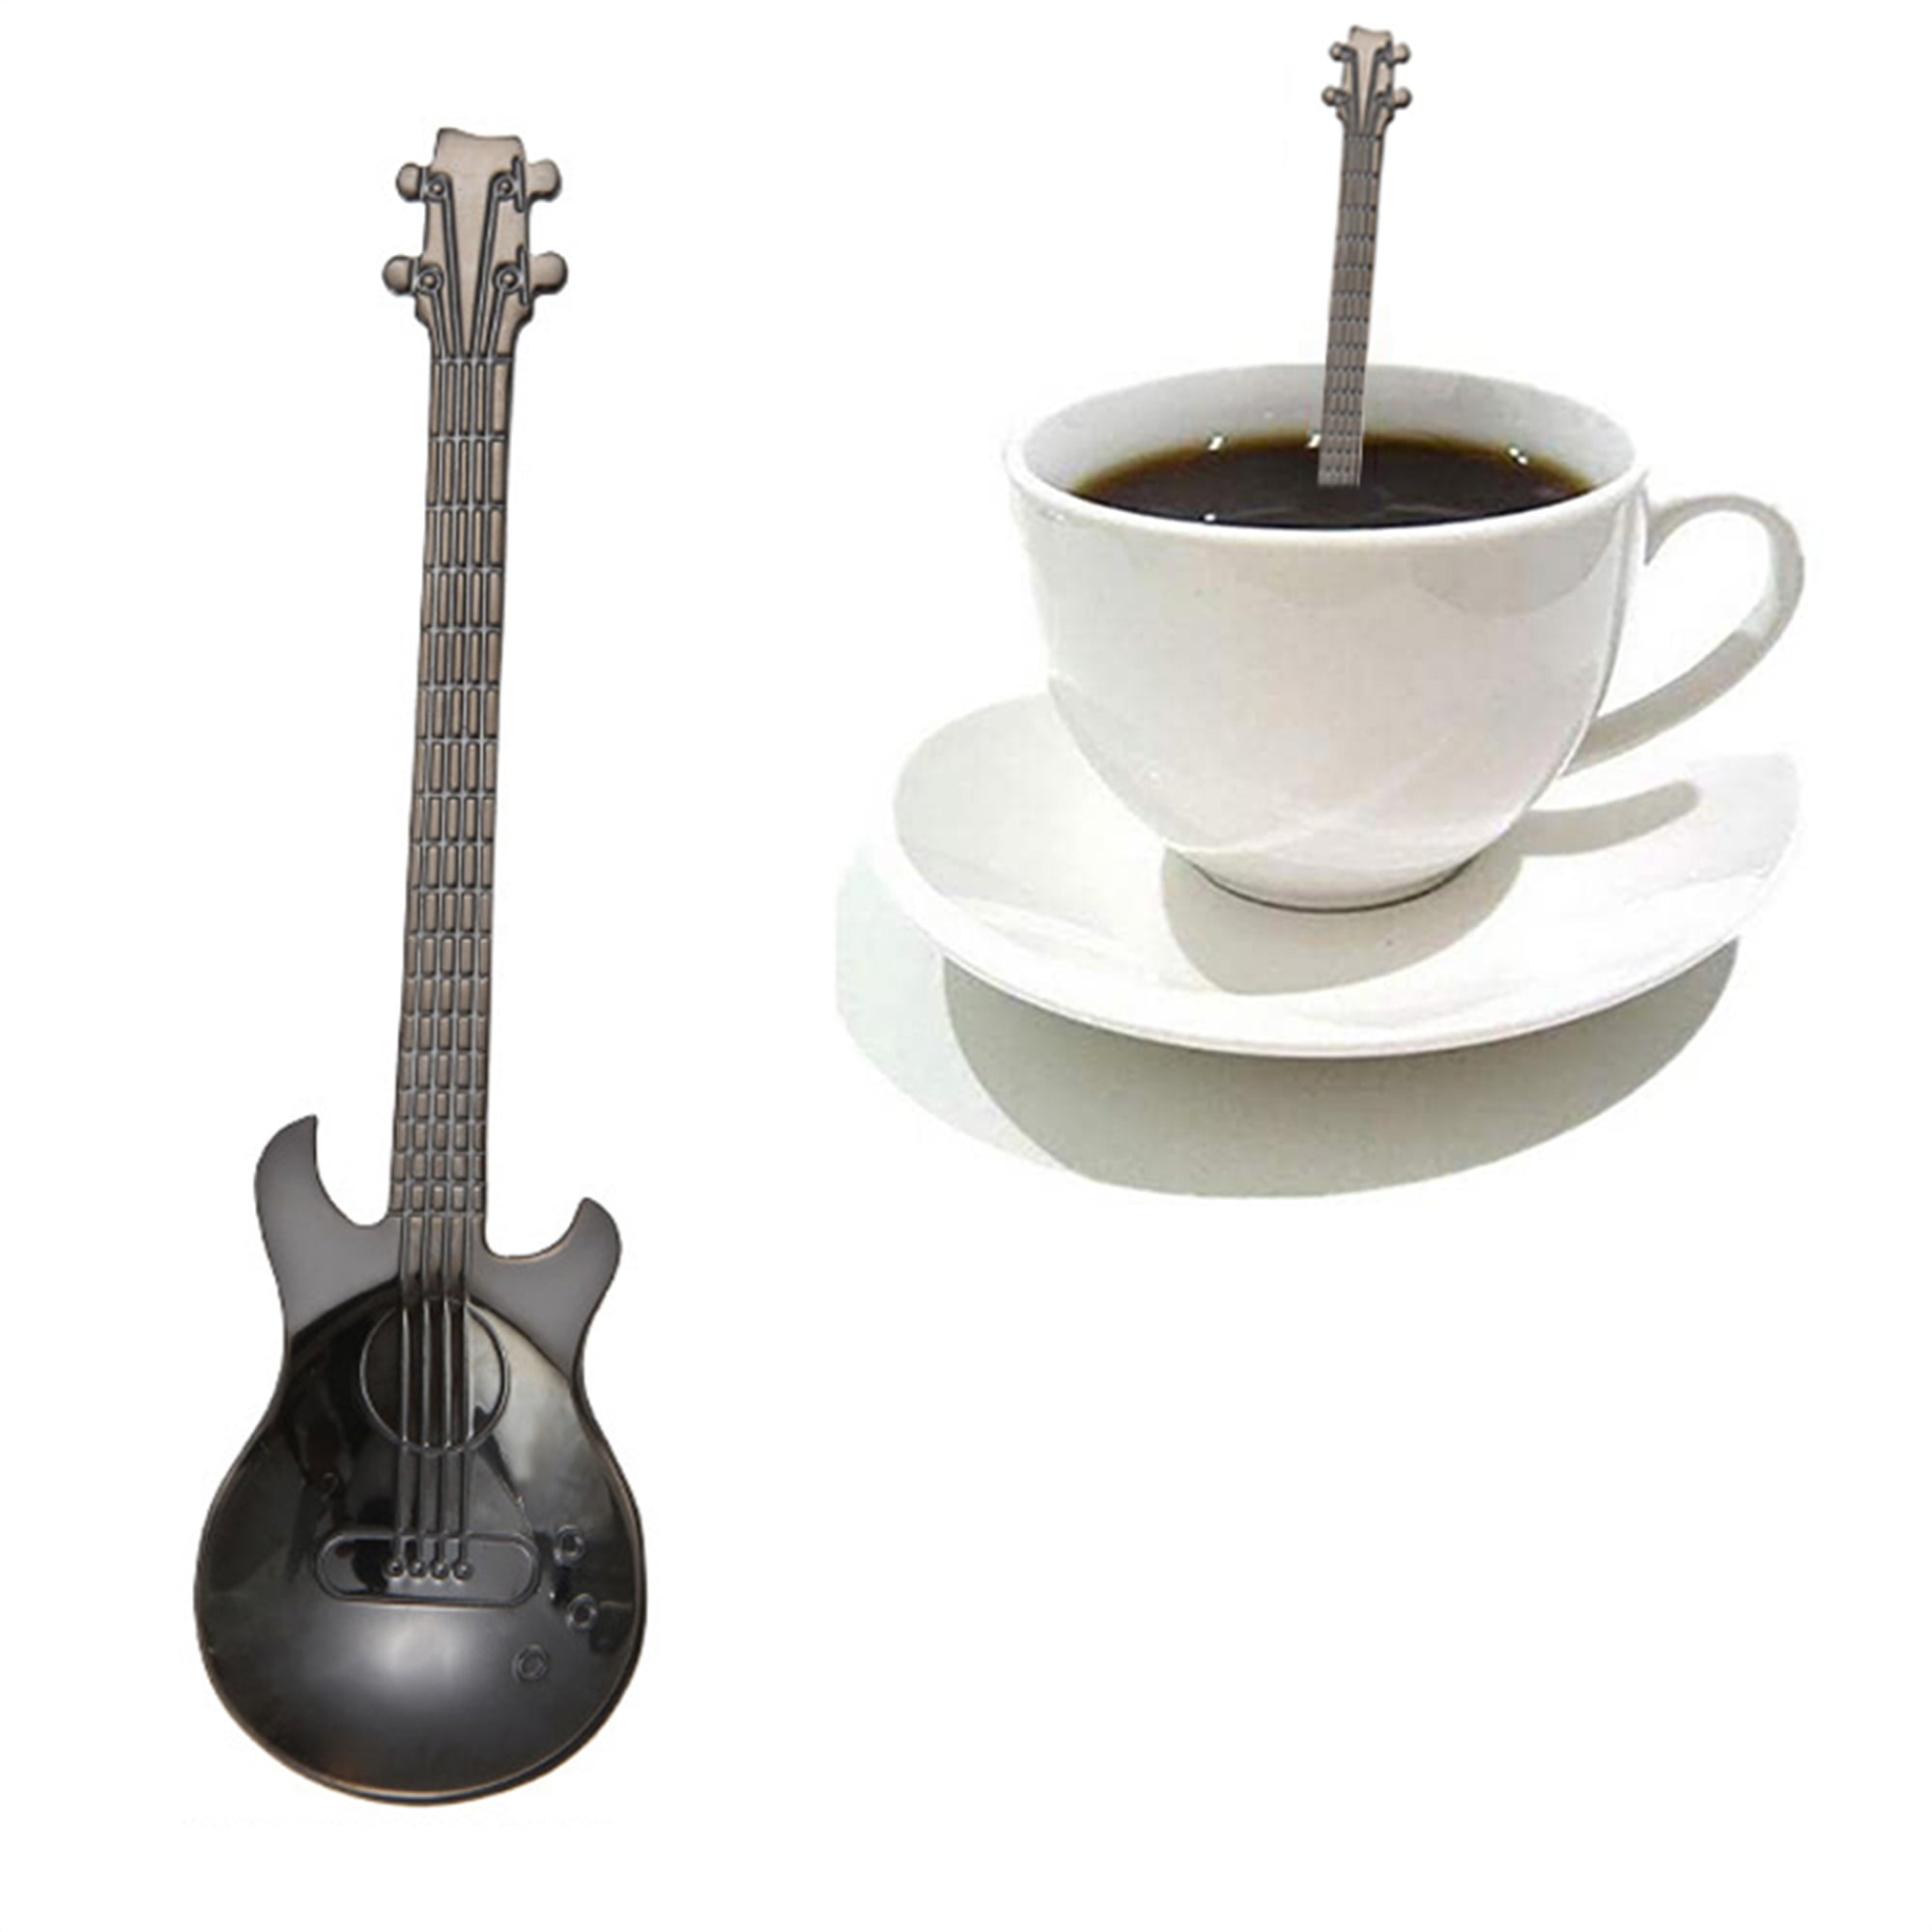 LSFYSZD Guitar Spoons Coffee Teaspoon, 304 Stainless Steel Colorful Dessert  Spoon, Demitasse Tea Scoop for Stirring Drink 